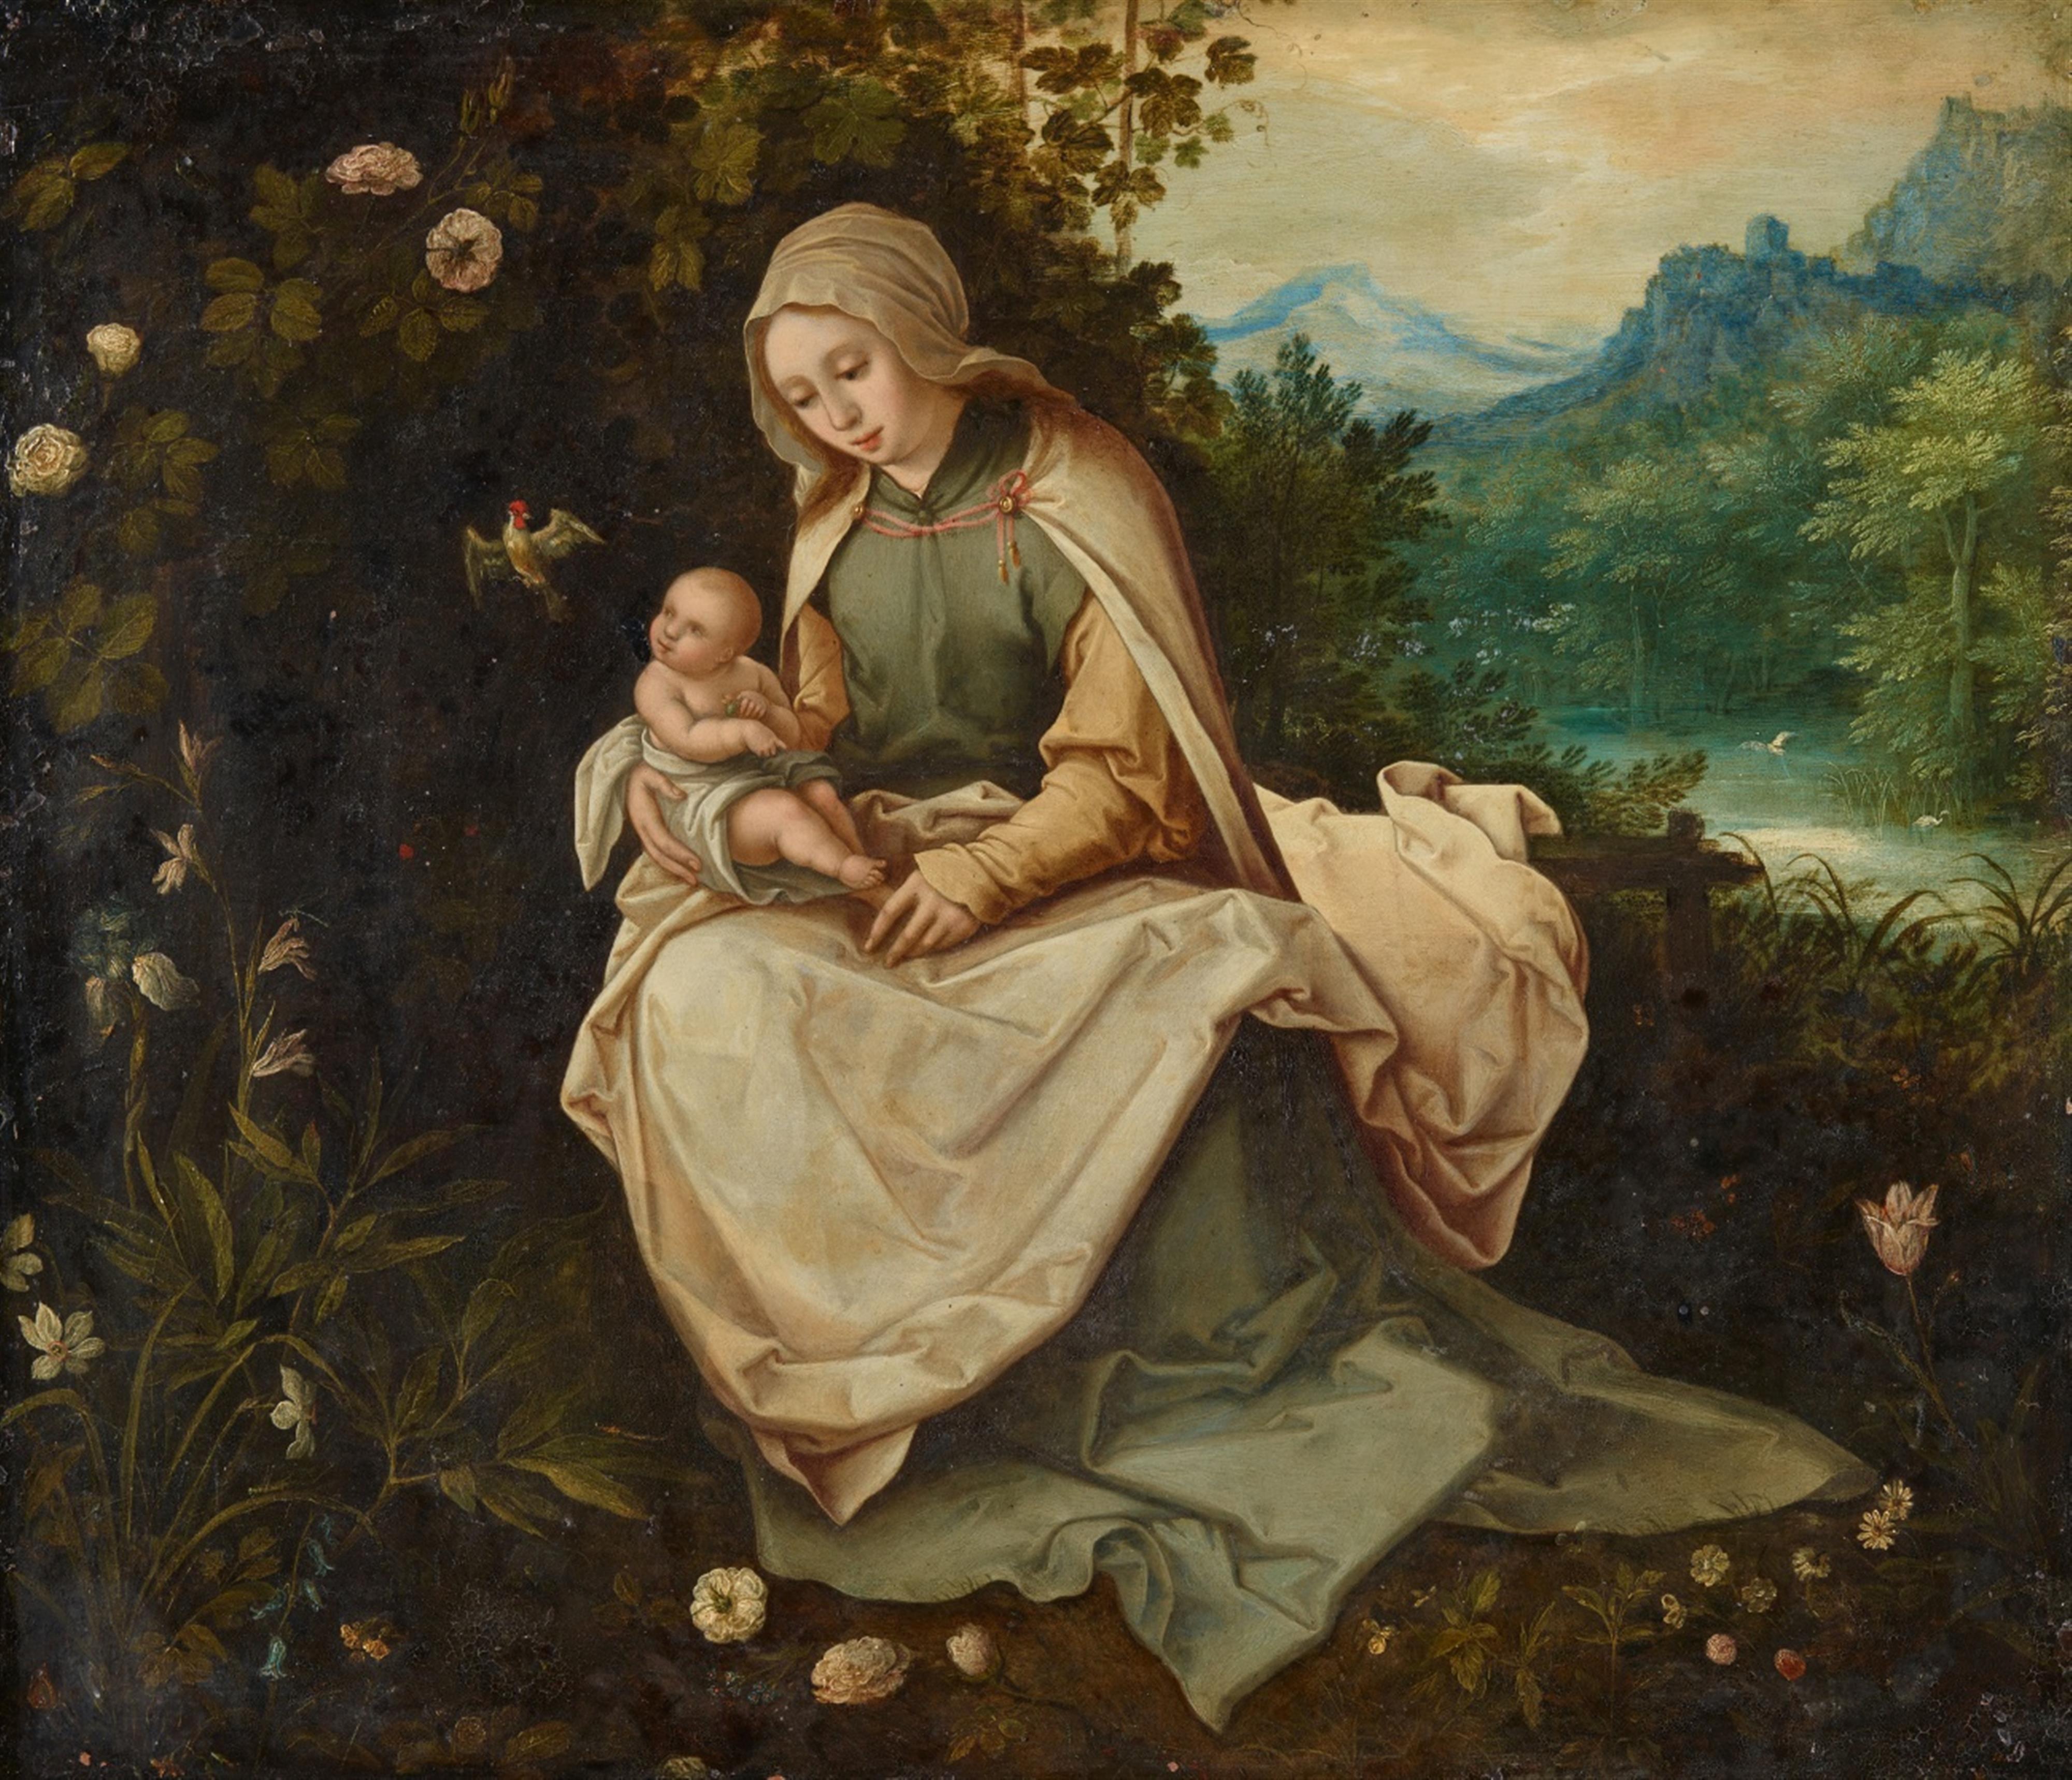 Unbekannter Künstler des 17. Jahrhunderts
Jan Brueghel d. J. - Madonna mit Kind in einer Landschaft